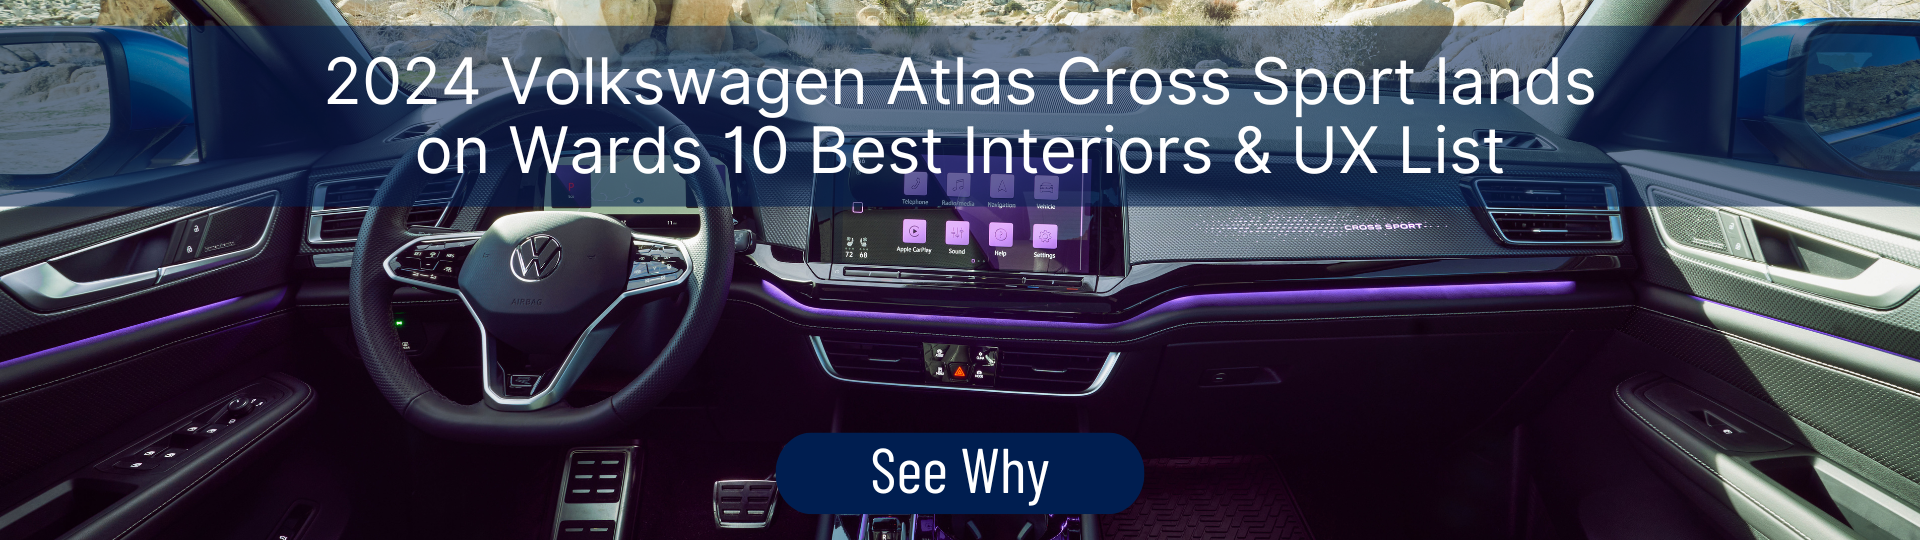 2024 Volkswagen Atlas Cross Sport Lands on Wards 10 Best Interiors & UX List